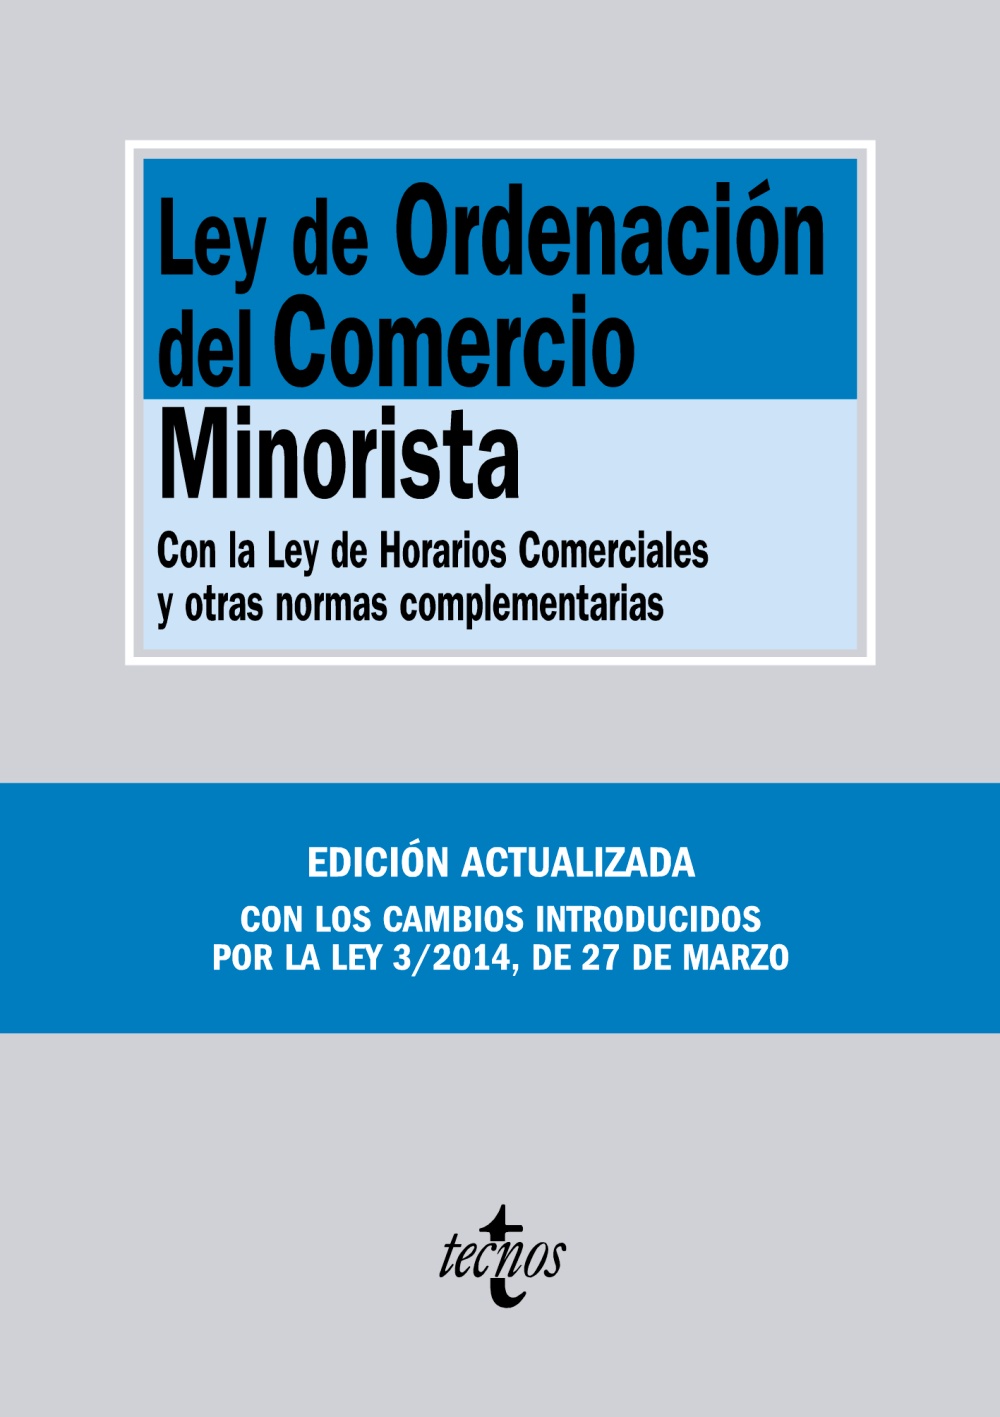 LEY ORDENACIÓN COMERCIO MINORISTA